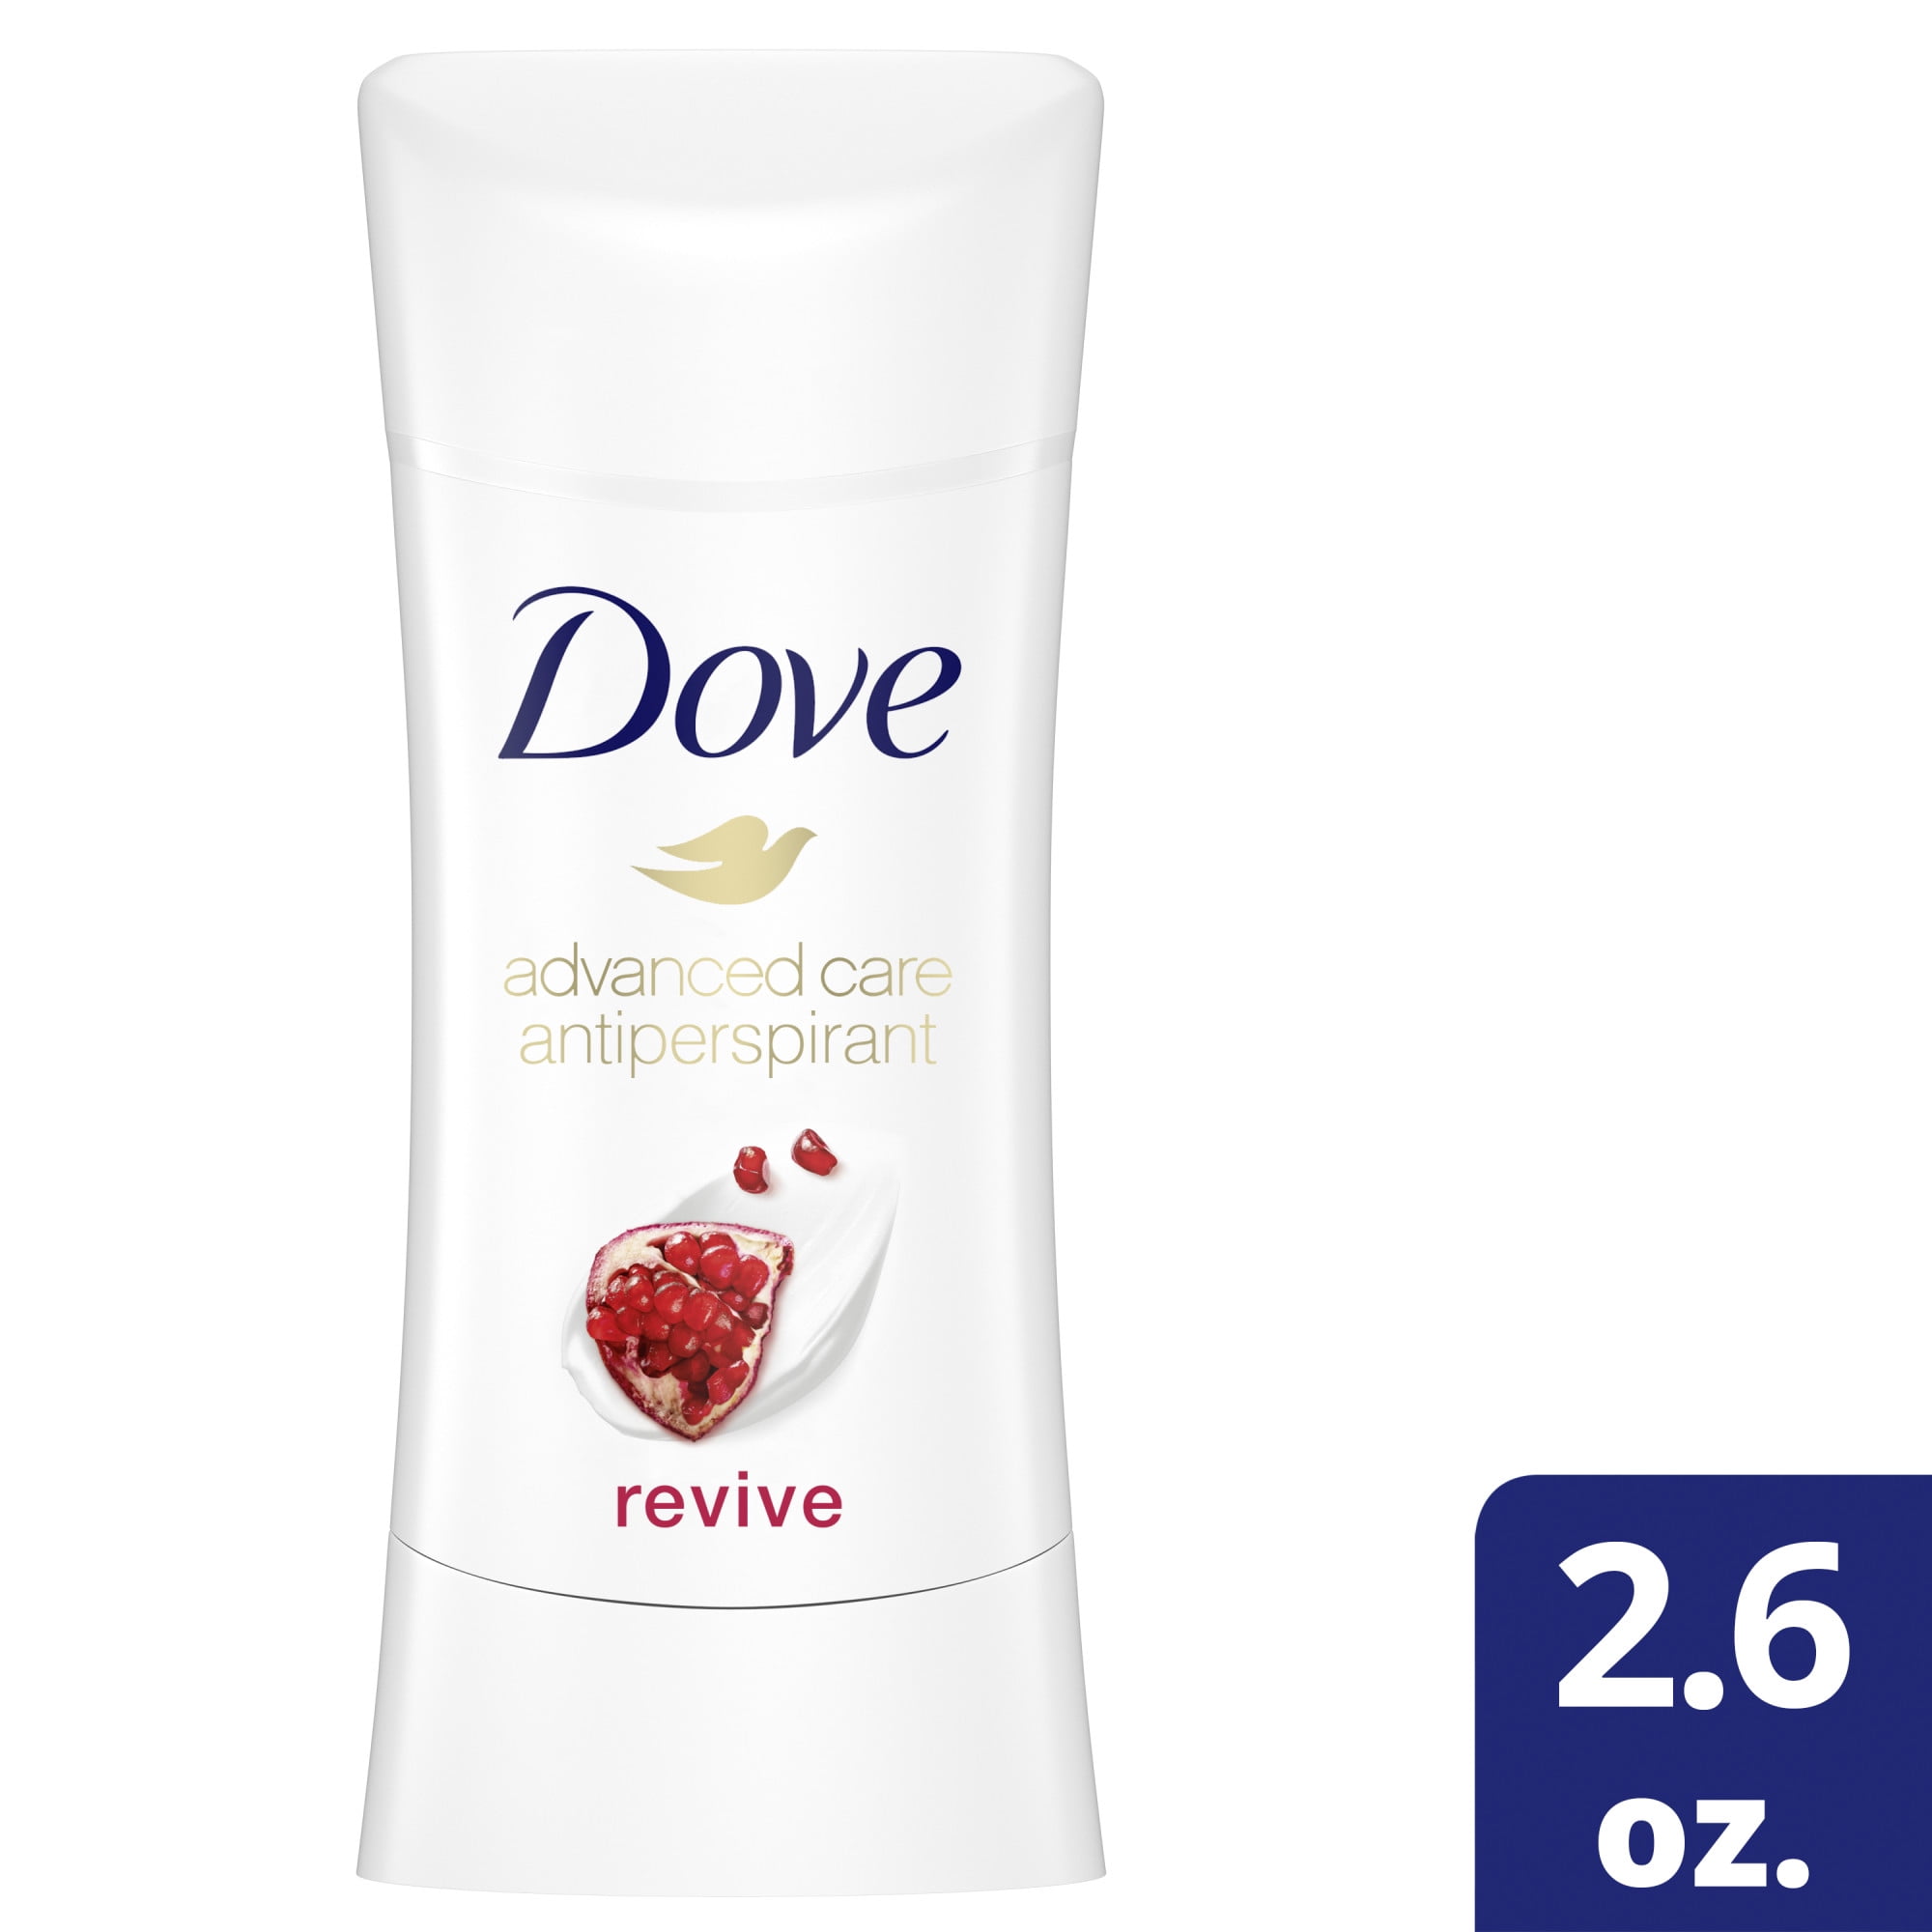 Dove Advanced Care Antiperspirant Deodorant, Revive, 2.6 oz